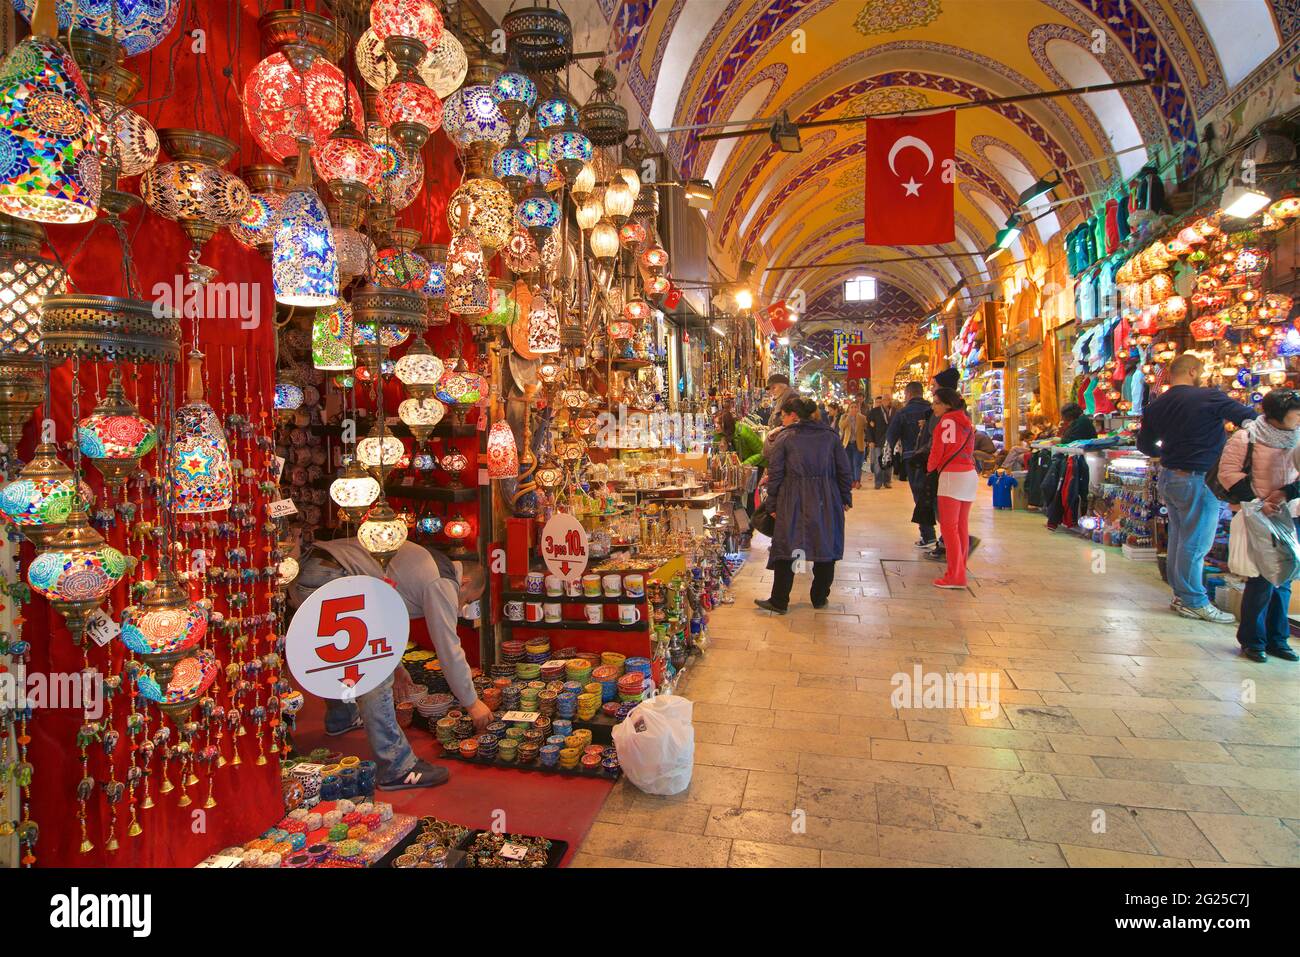 Grand choix de lanternes en verre à vendre dans le Grand Bazar, Kapali Carsi, Istanbul, Turquie Banque D'Images